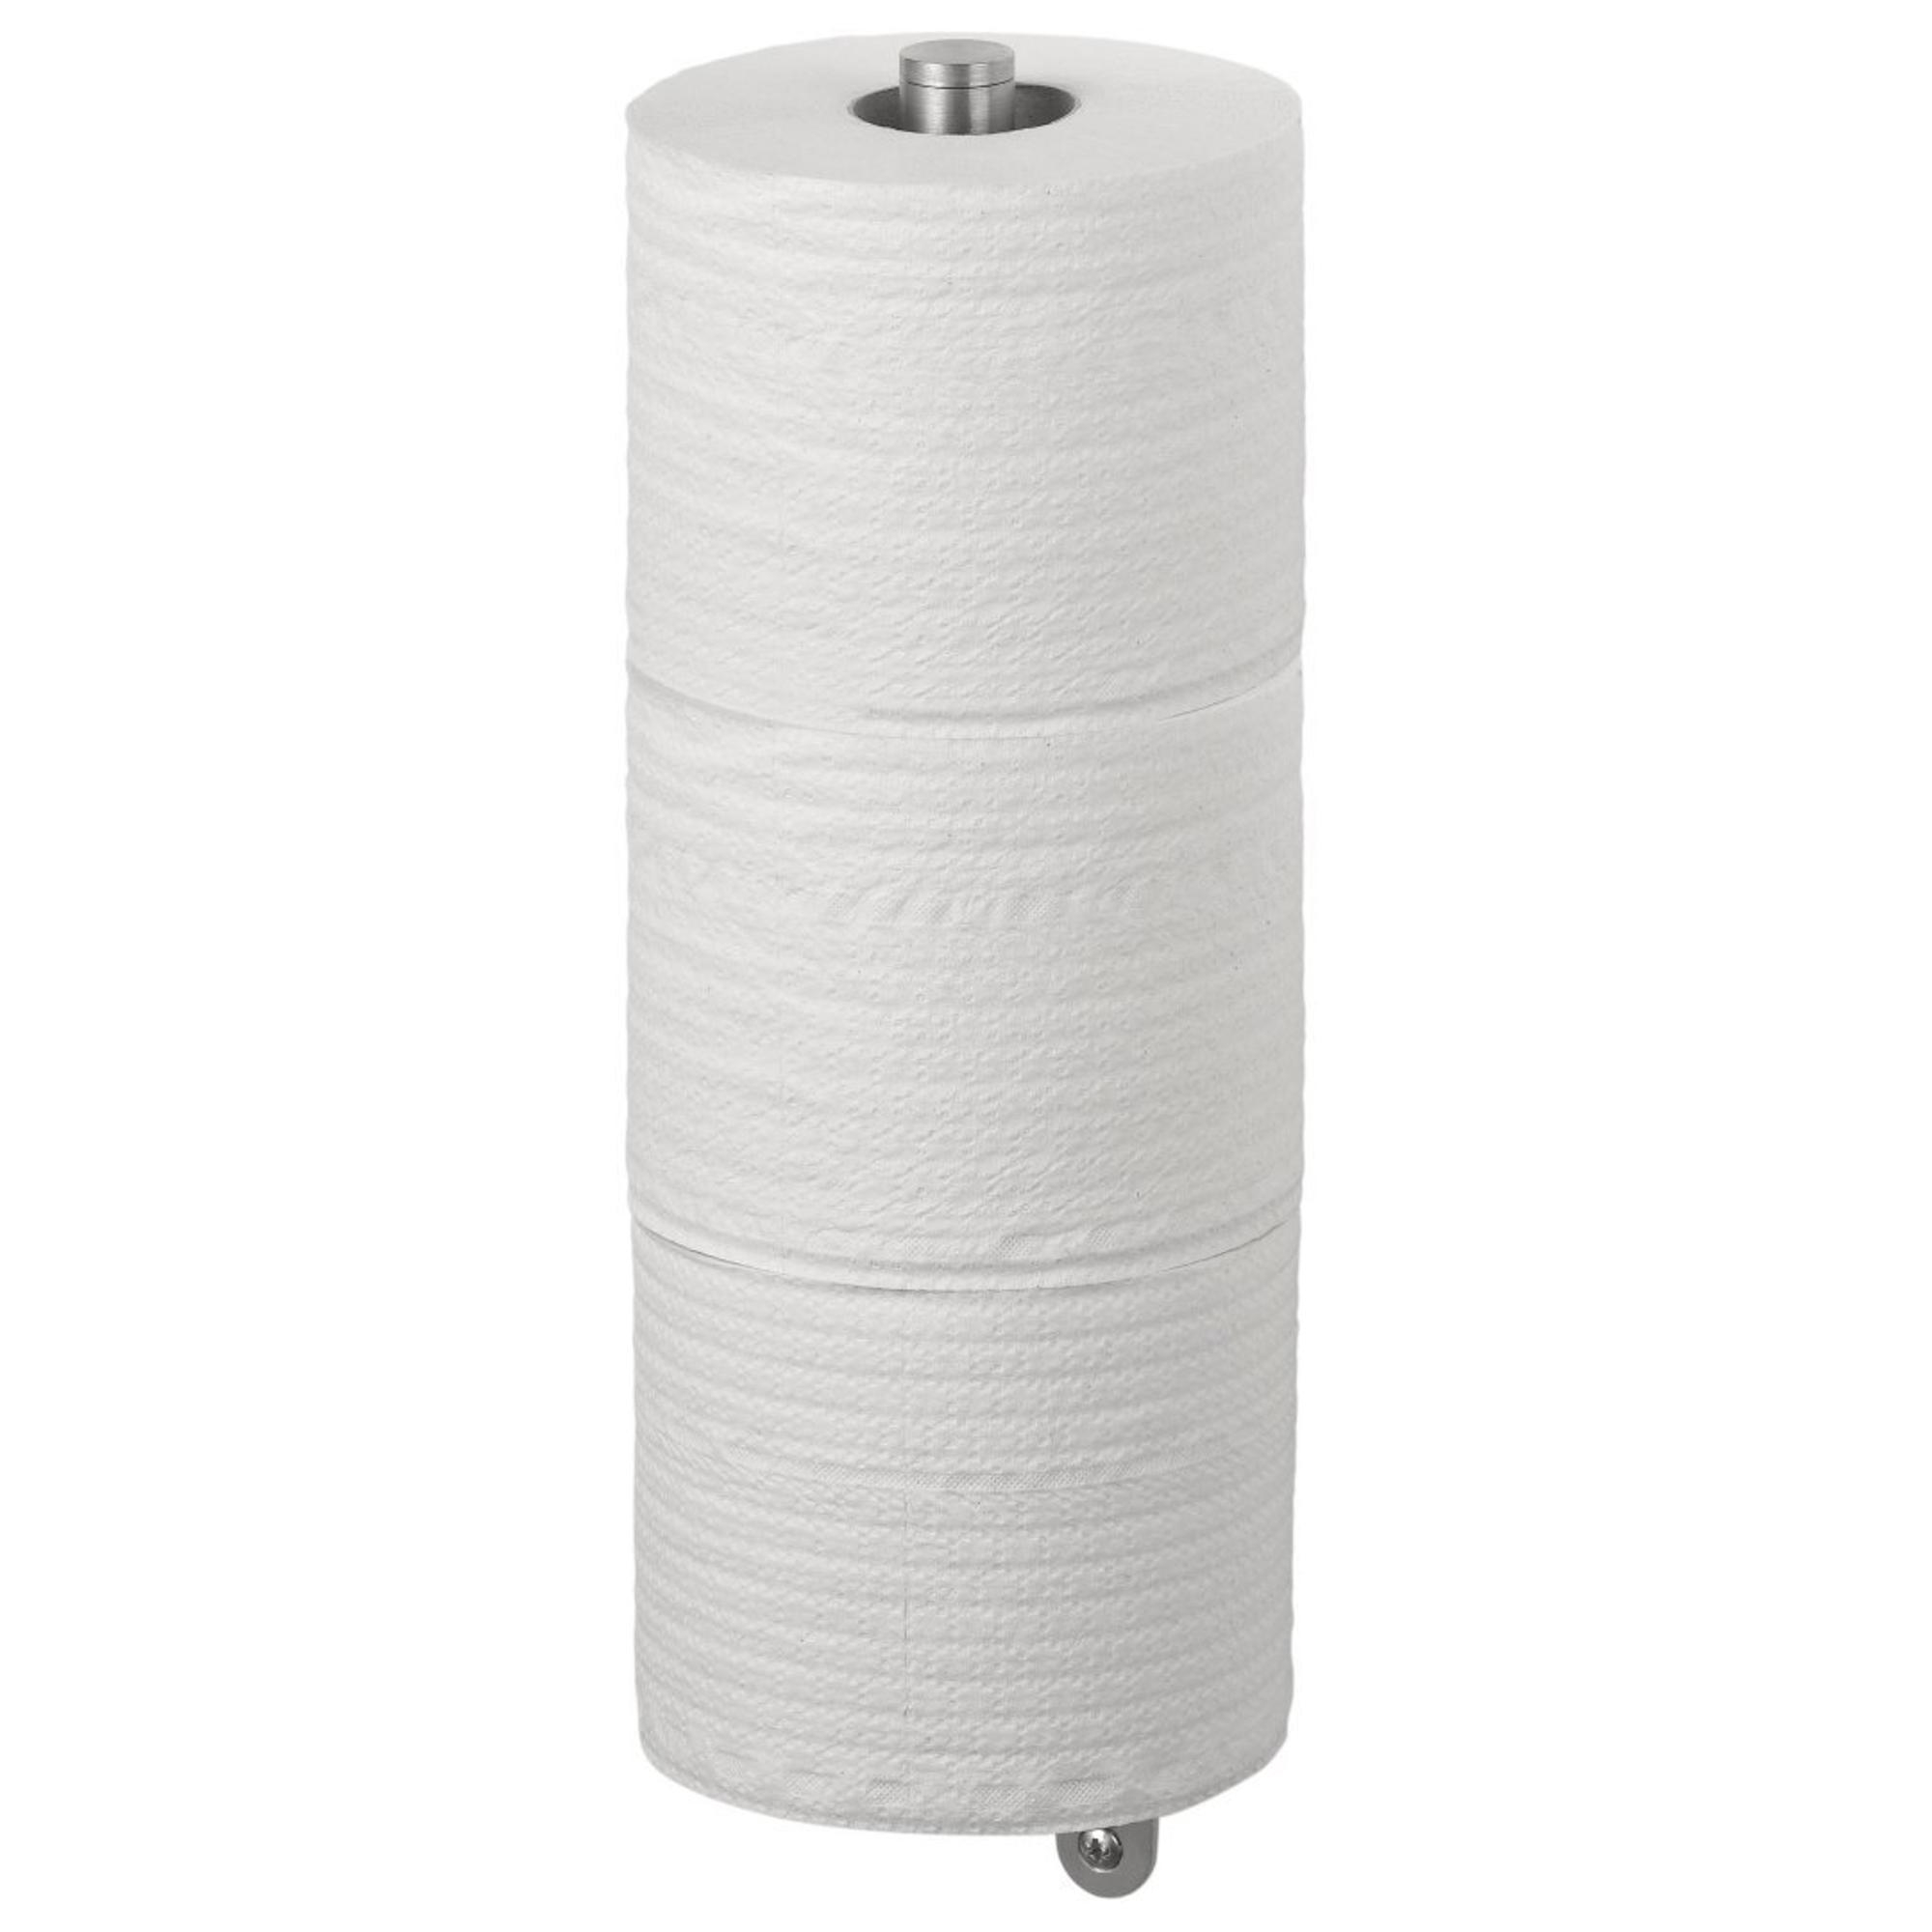 Haceka Ixi Réserve papier toilette Chrome mat - 1208487 